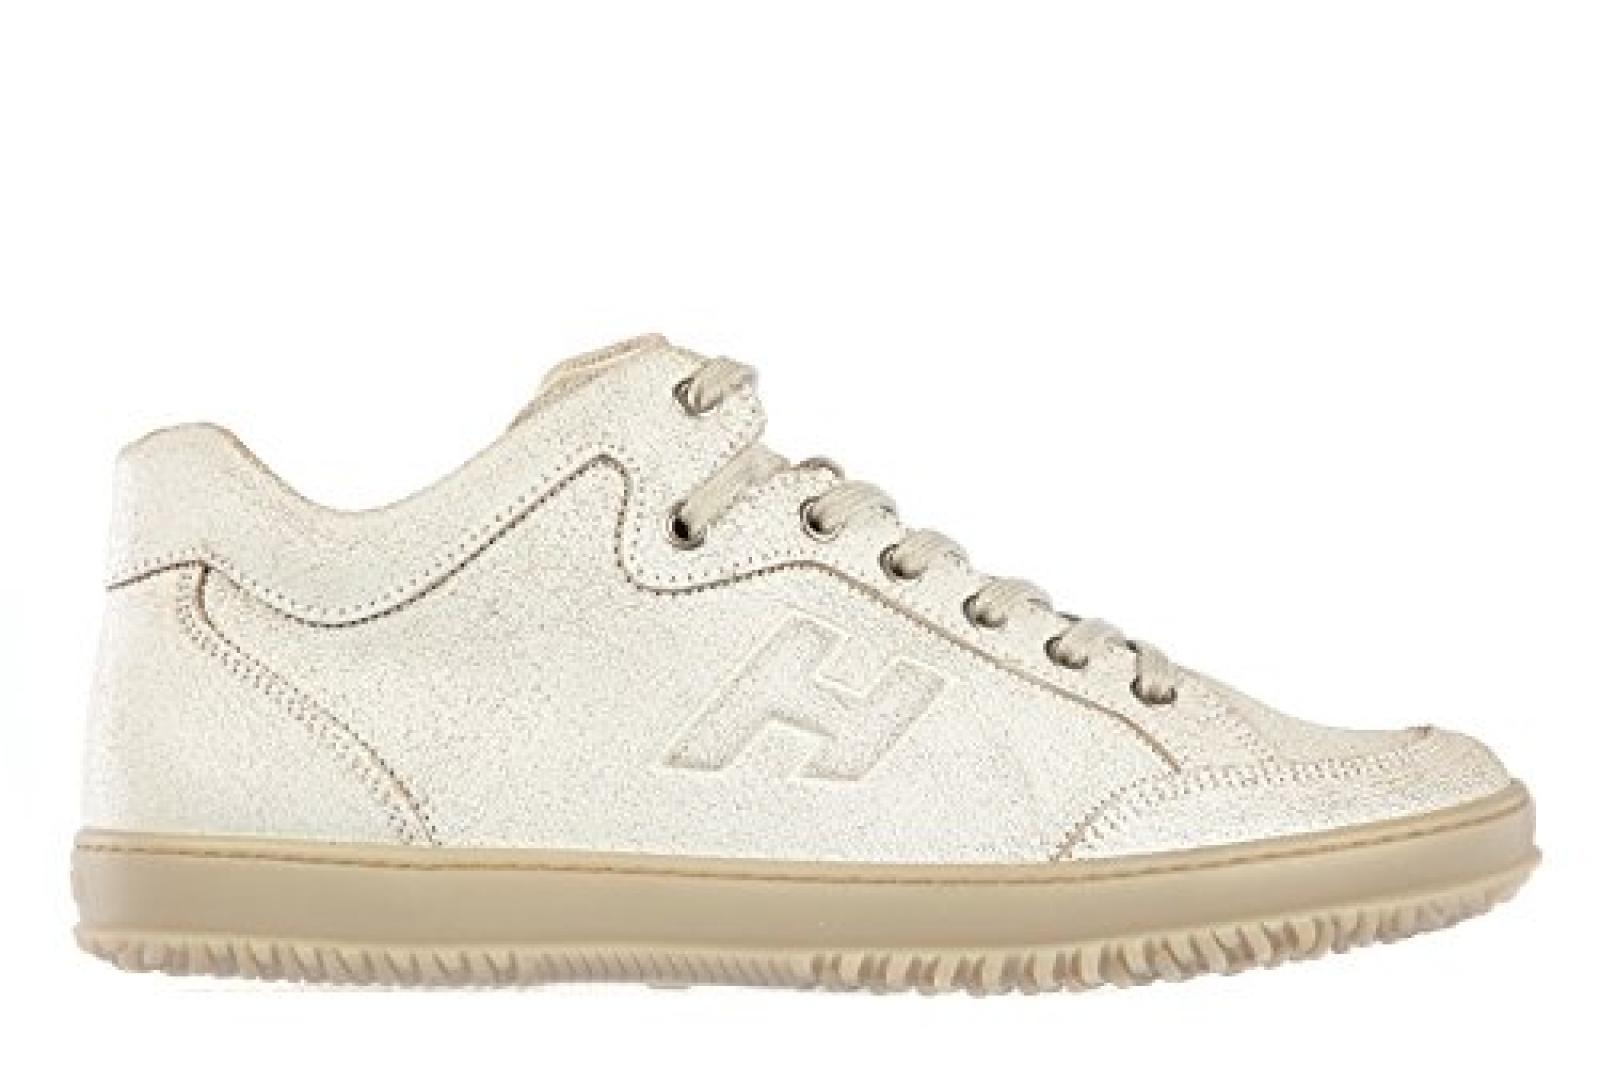 Hogan Herrenschuhe Herren Leder Schuhe Sneakers h168 mid cut Weiß 